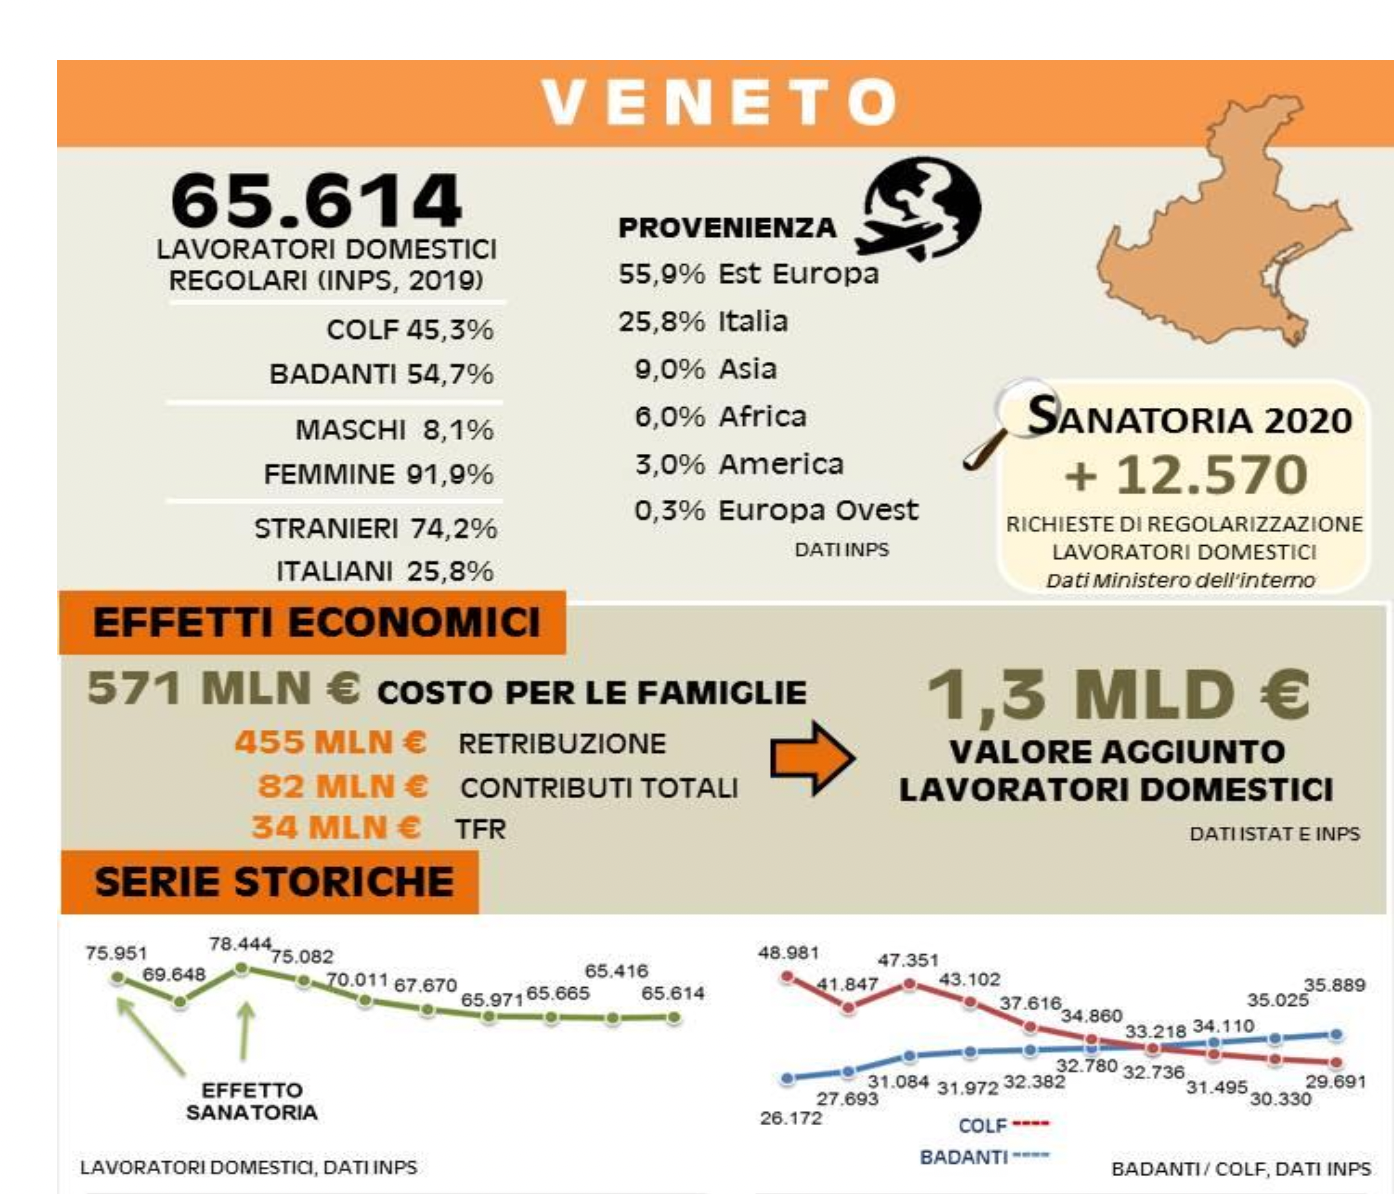 Lavori domestici, dati Inps per il Veneto per badanti e colf